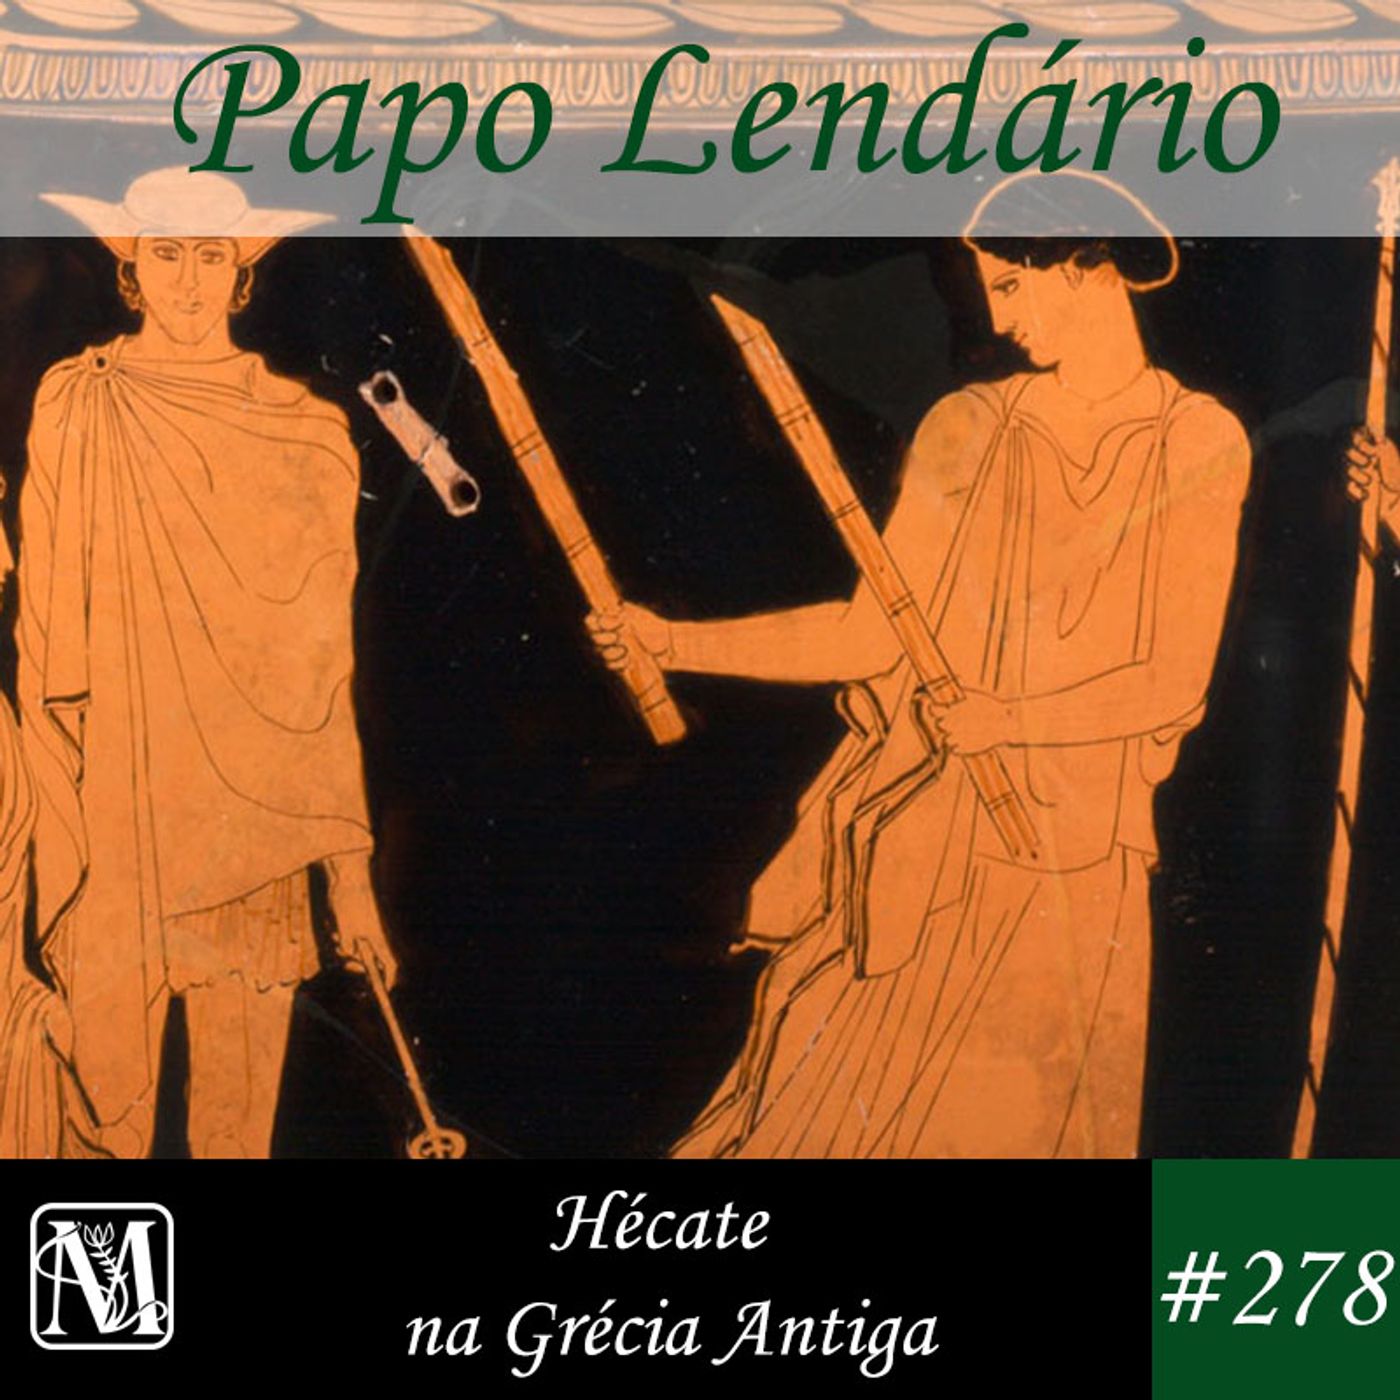 Papo Lendário #278 – Hécate na Grécia Antiga